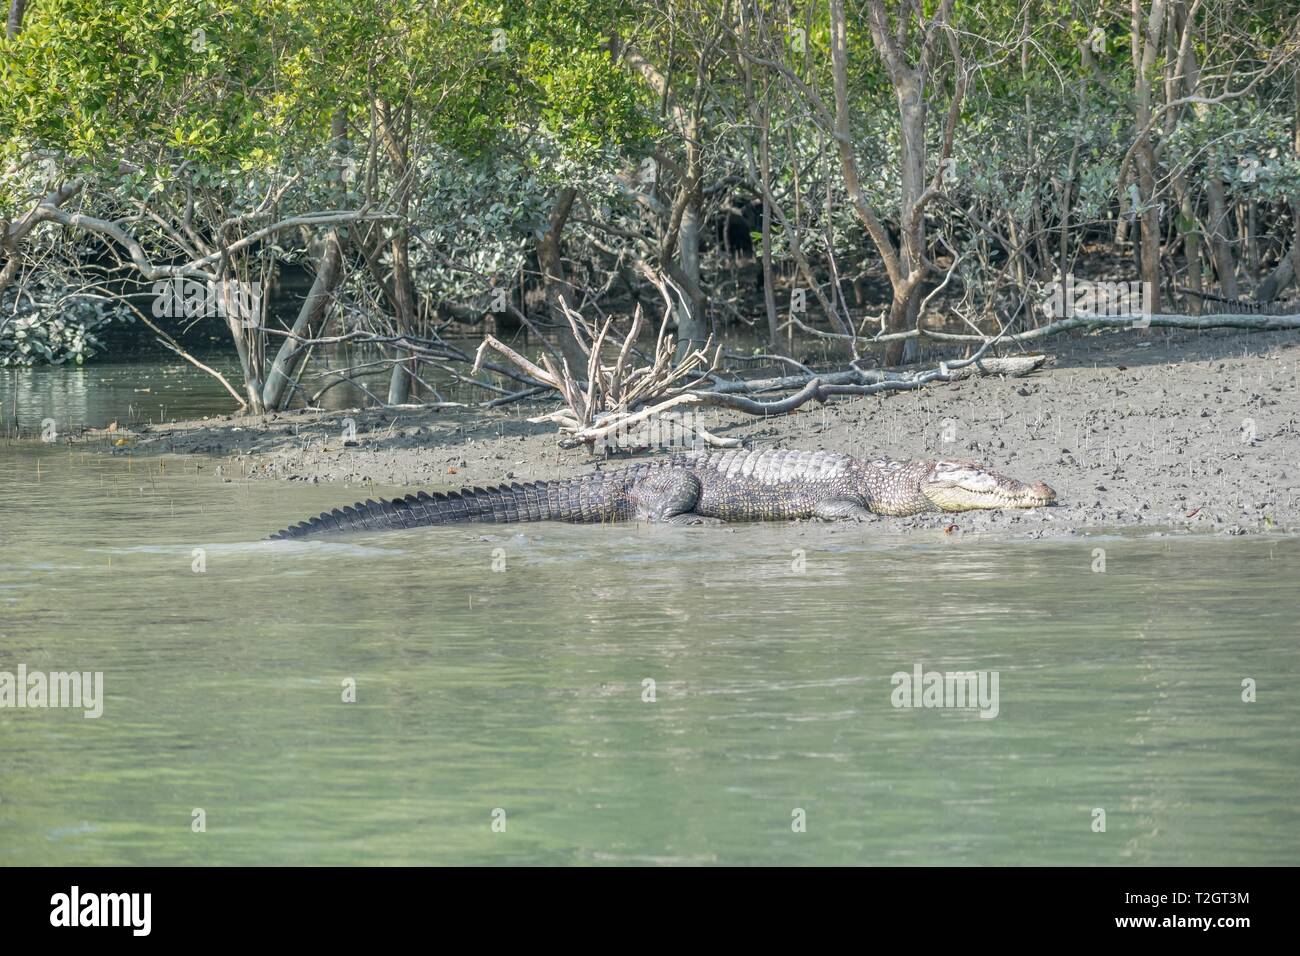 Subadult crocodile sunbathing in Sundarban along riverside. Stock Photo